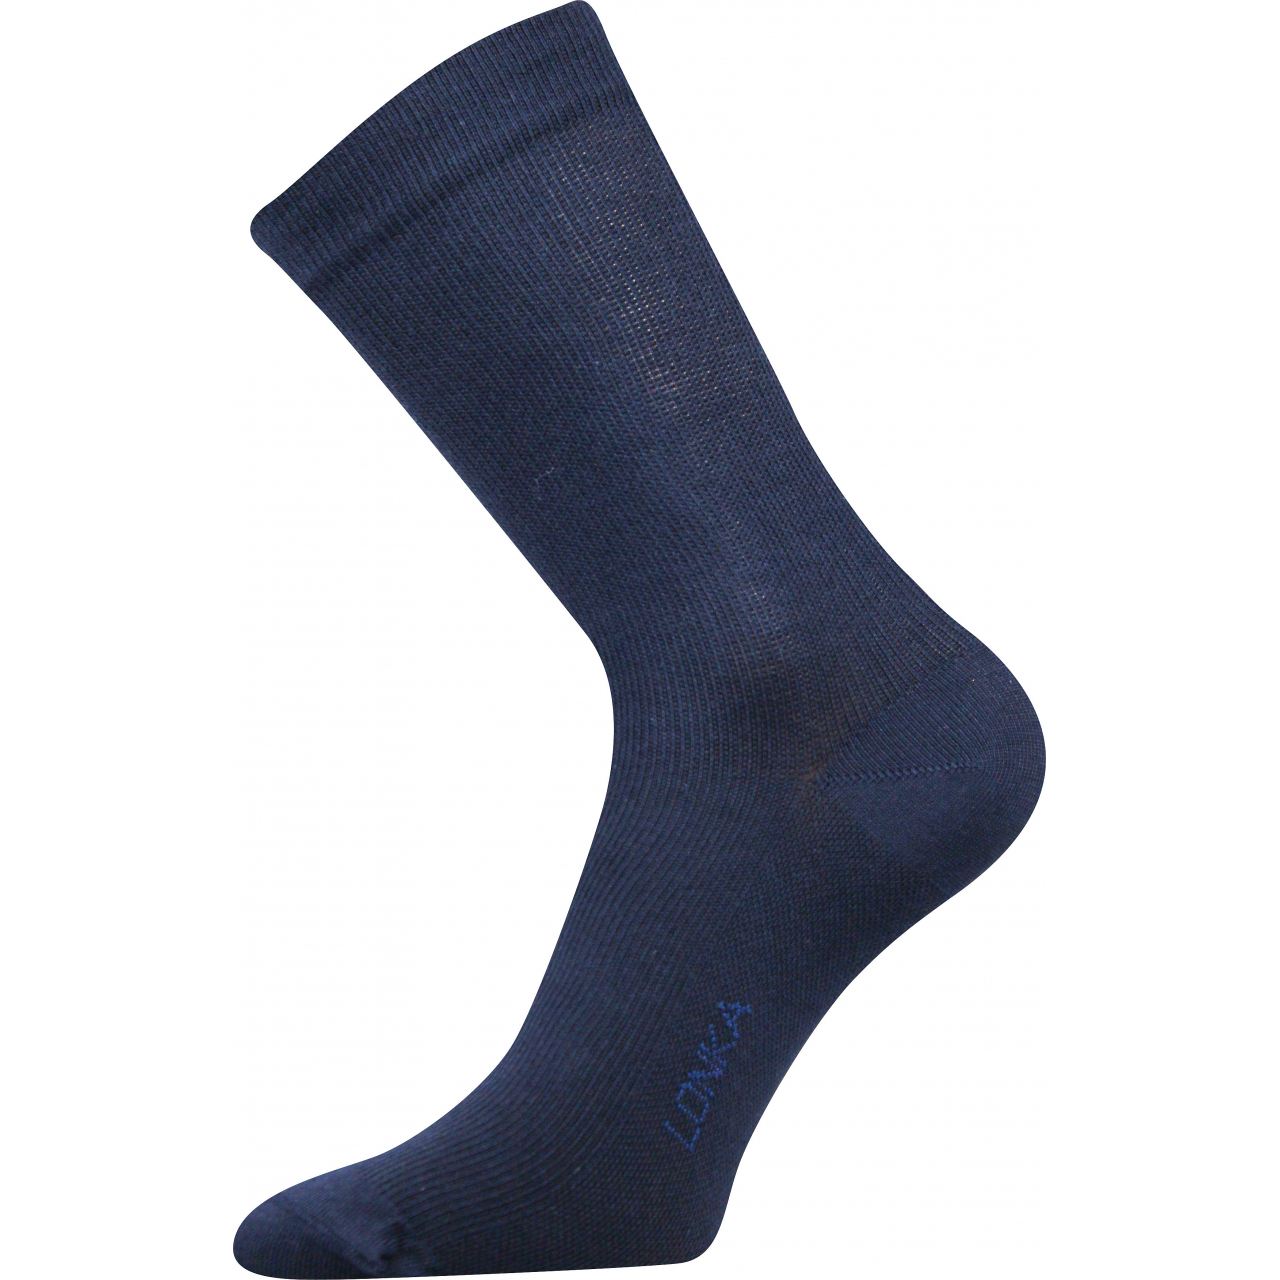 Ponožky kompresní Lonka Kooper - tmavě modré, 43-46